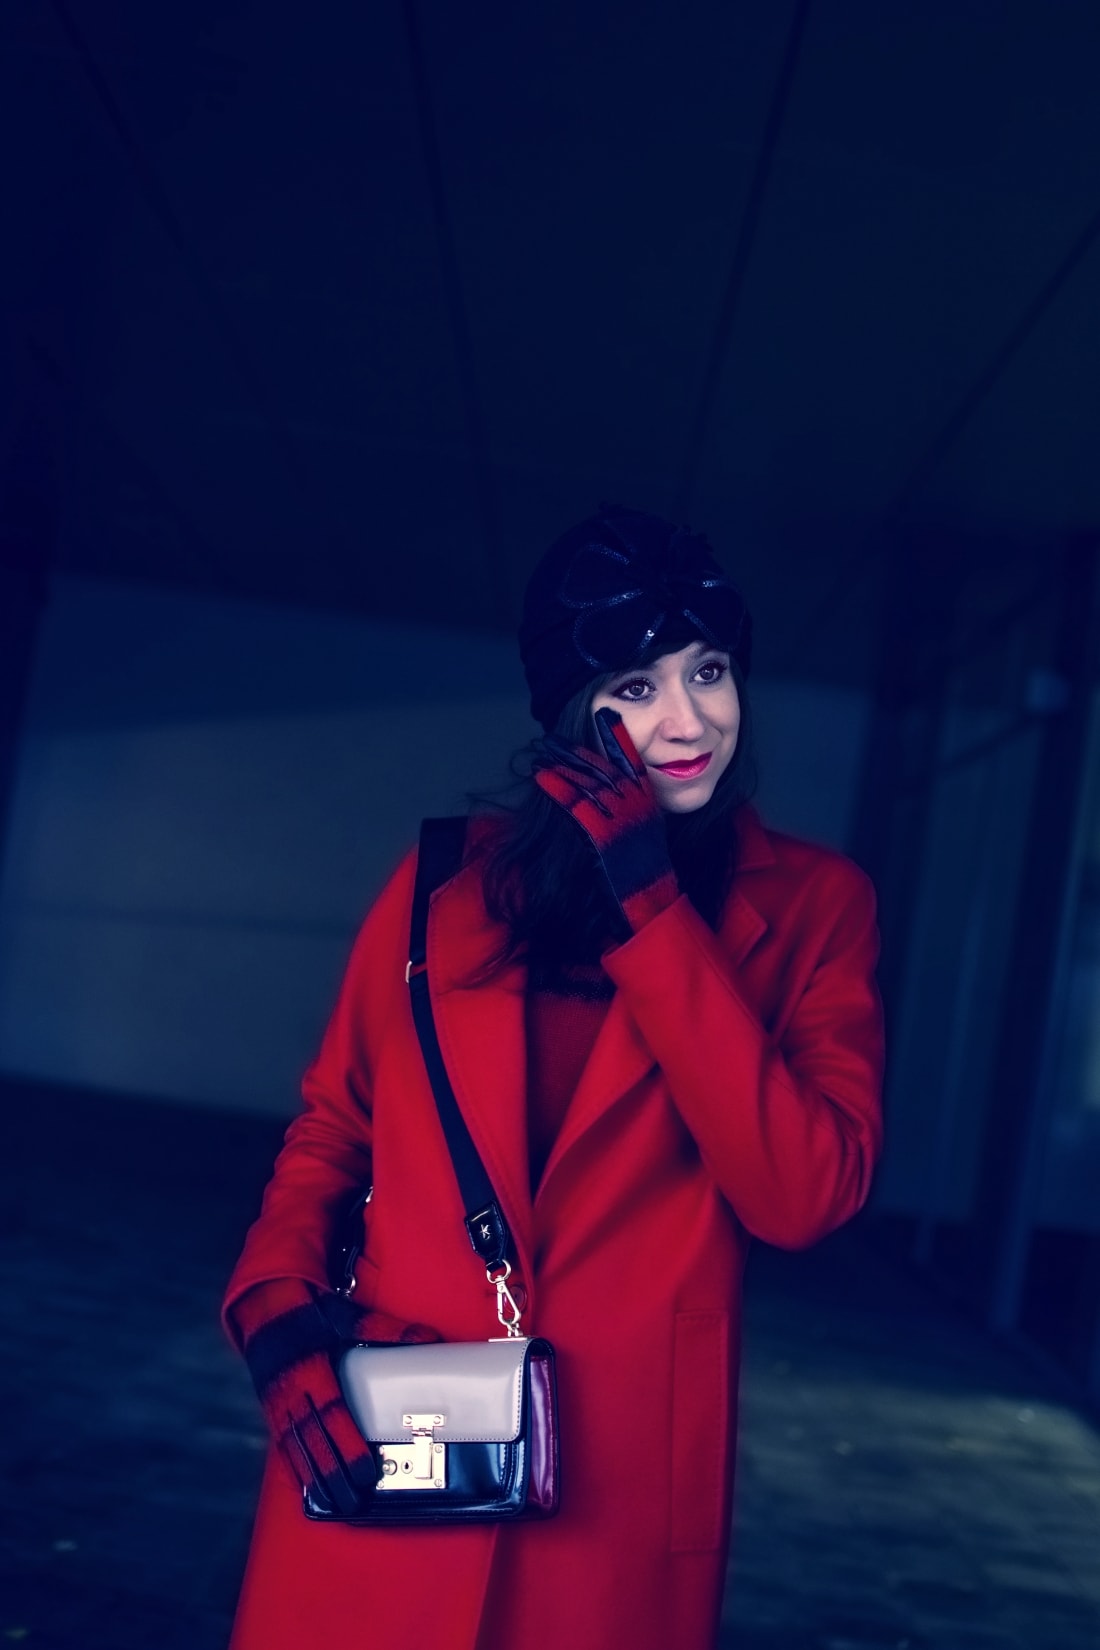 Prajem vám_Katharine-fashion is beautiful_Červený kabát Zara_Červený vzorovaný sveter More&More_Vianoce_Katarína Jakubčová_Fashion blogger